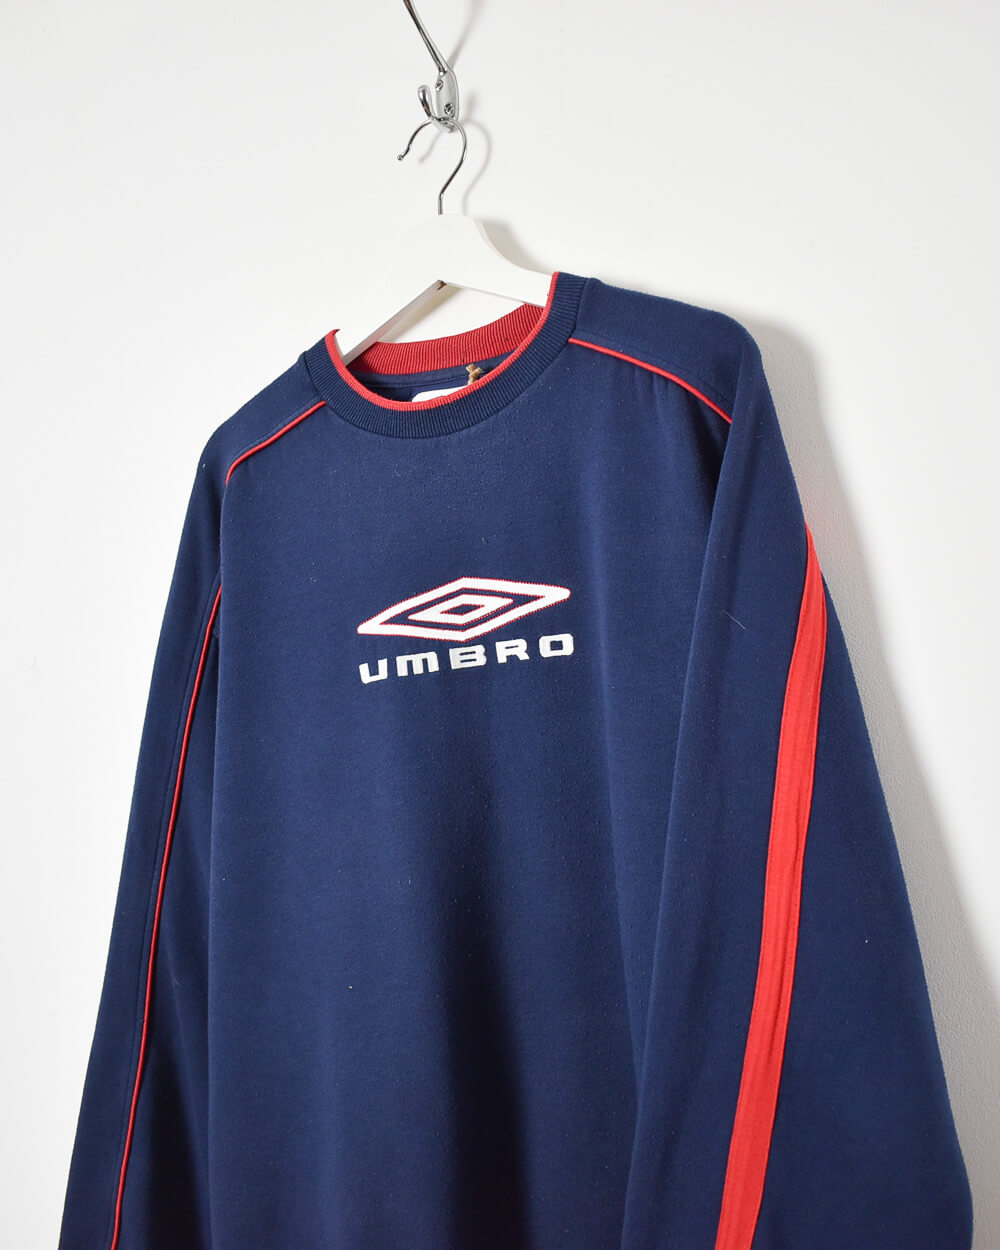 Navy Umbro Sweatshirt - X-Large